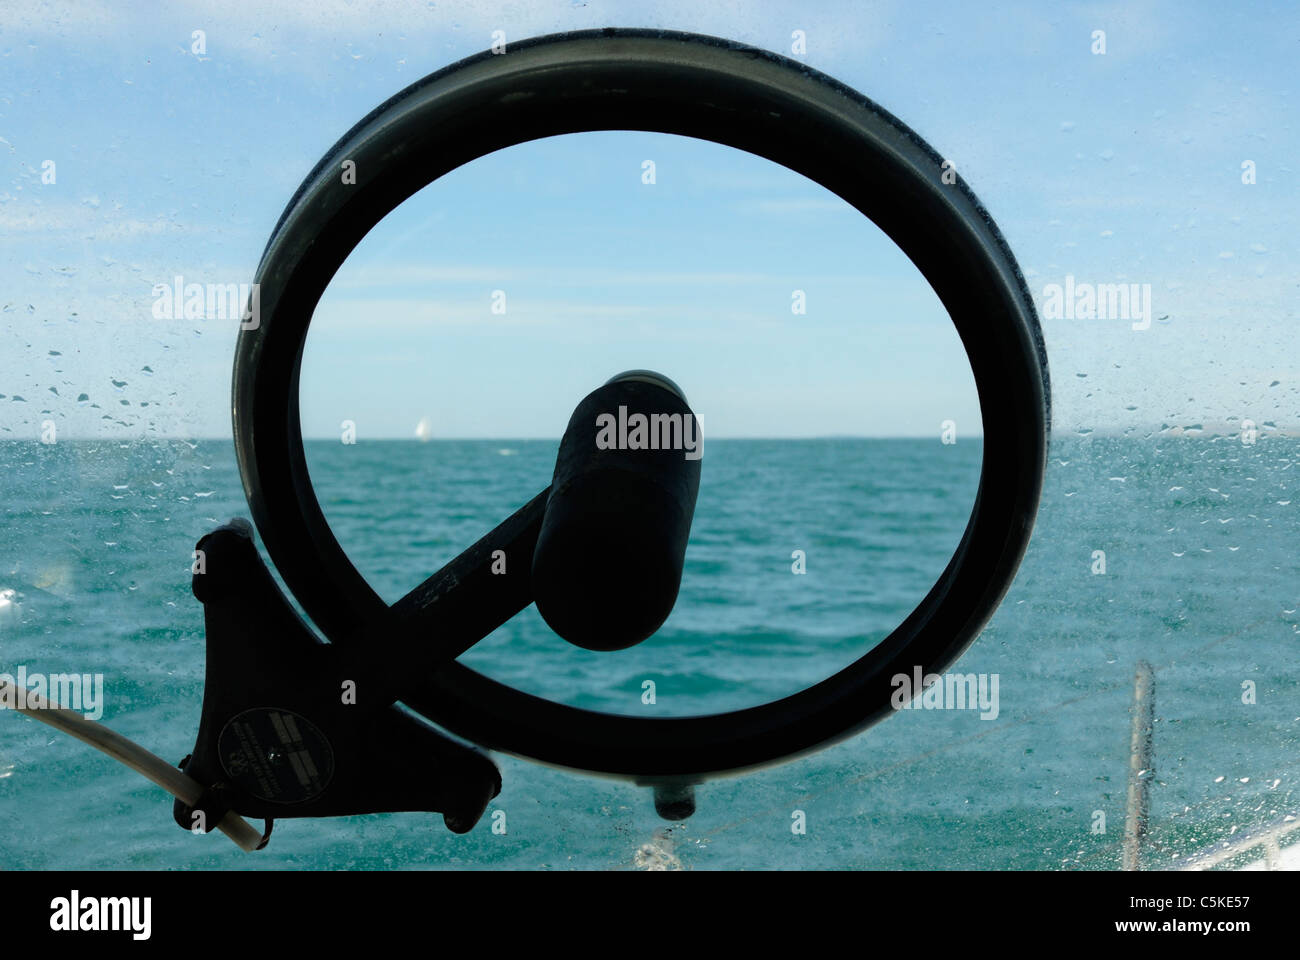 Ein Kent "Freie Sicht" Bildschirm drehen Boot-Windschutzscheibe, die größere Sichtbarkeit bei rauer See ermöglicht. Stockfoto